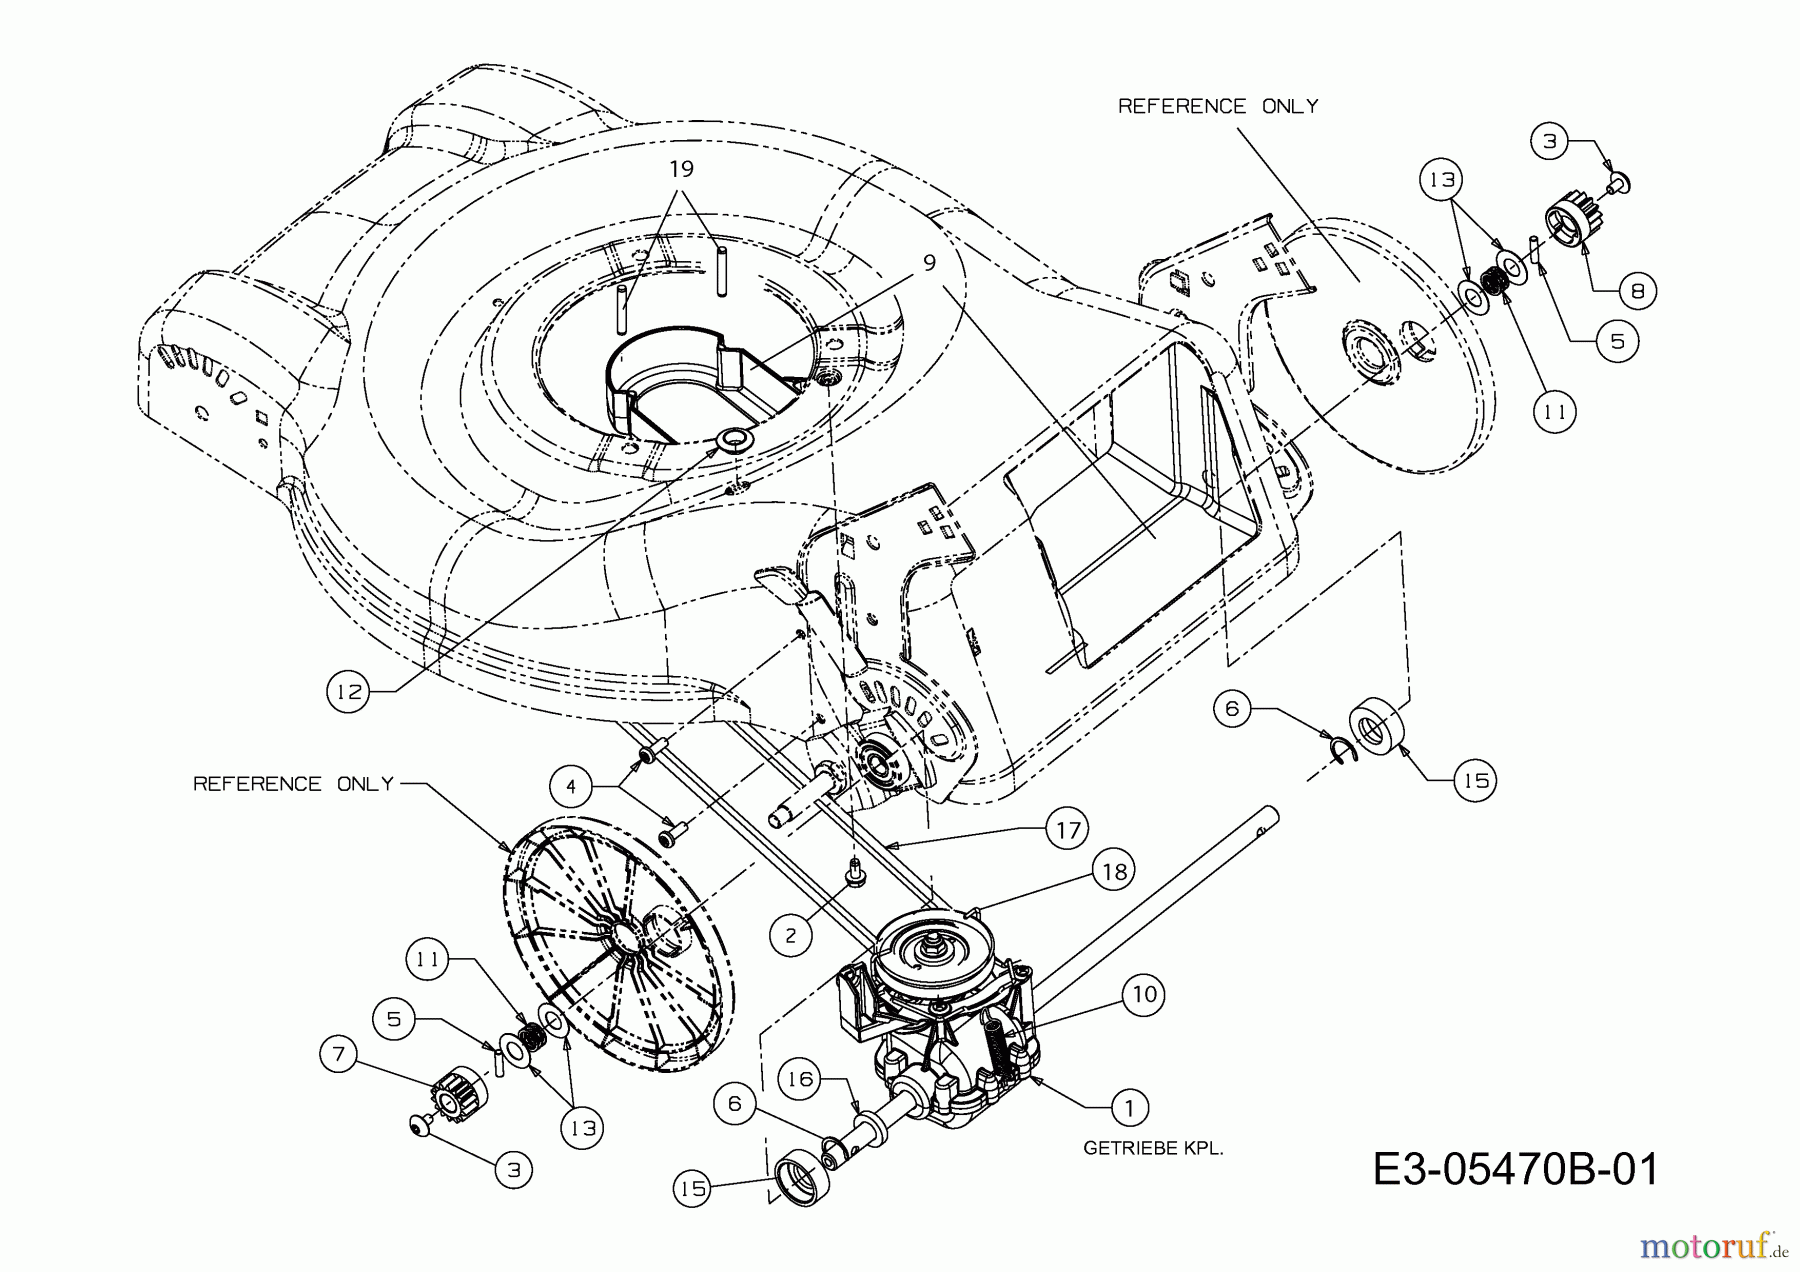  M Tech Motormäher mit Antrieb M 4645 SP 12D-J2JS605  (2013) Getriebe